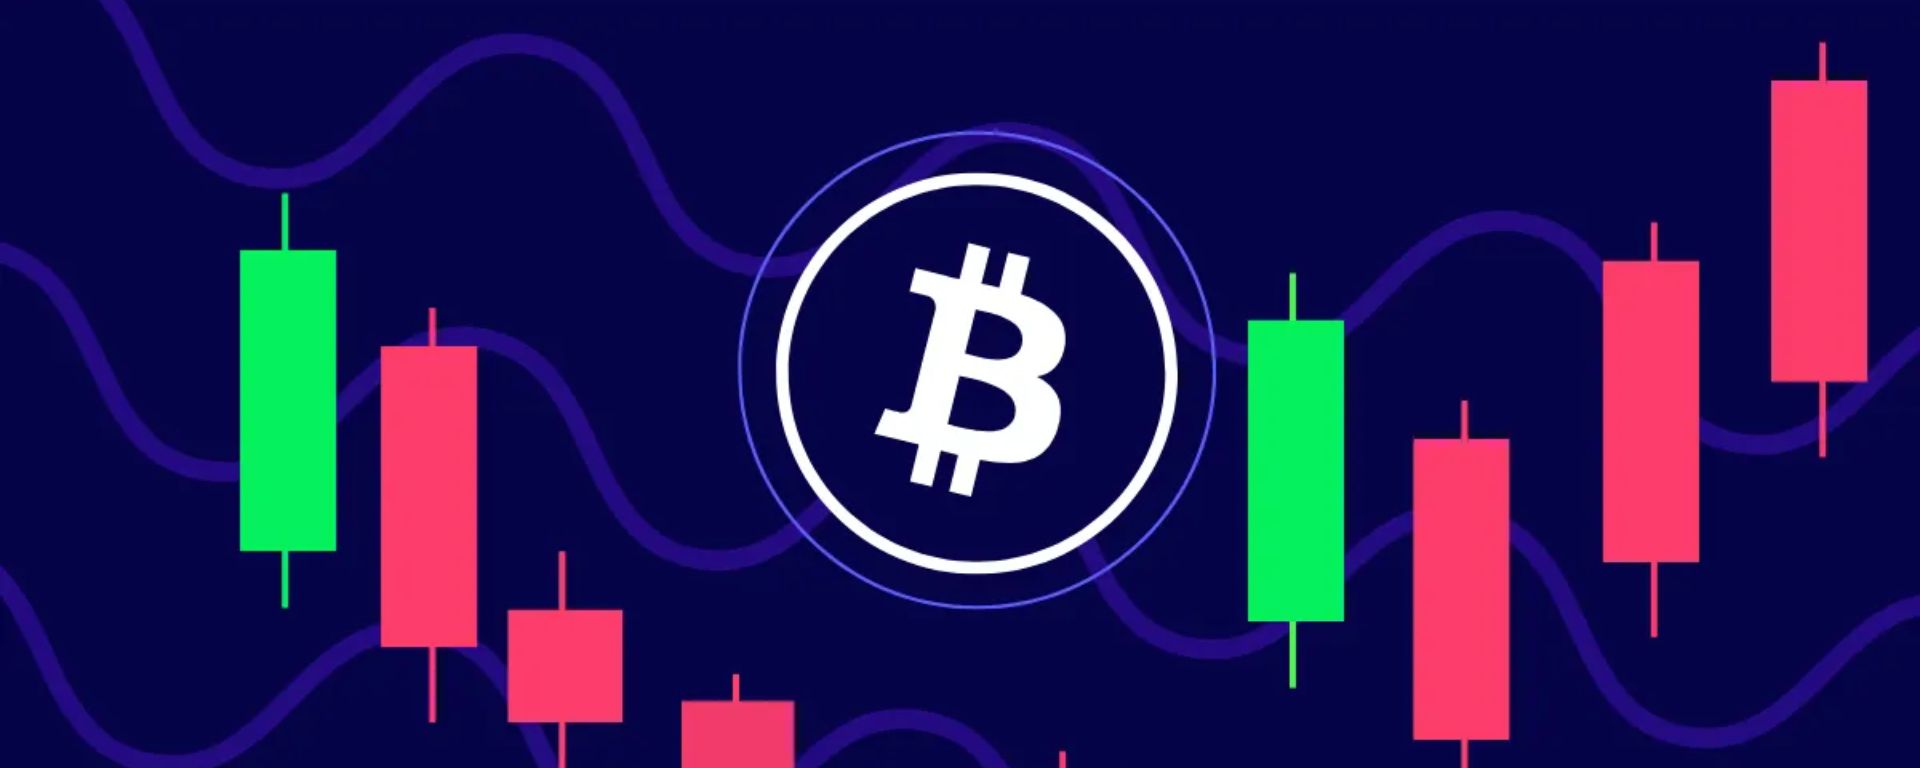 Análise: Bitcoin se consolida em US$ 42.000, Cardano sobe e Solana mostra potencial de alta